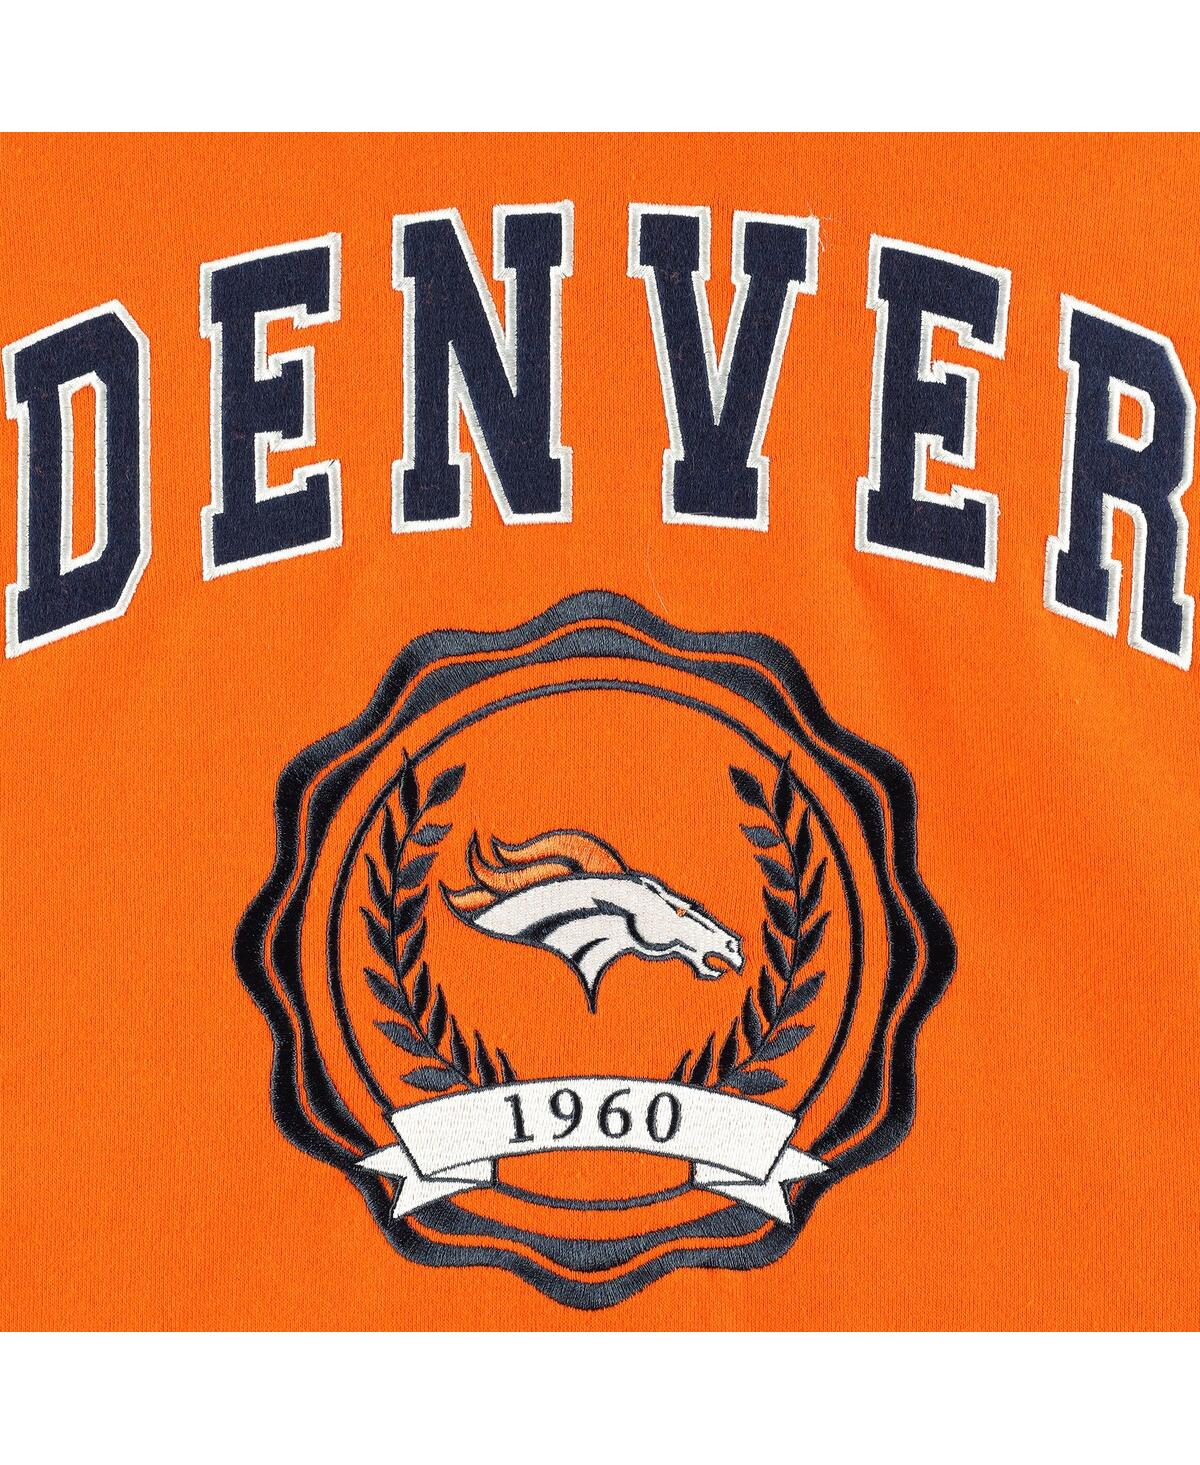 Shop Tommy Hilfiger Women's  Orange Denver Broncos Becca Drop Shoulder Pullover Hoodie